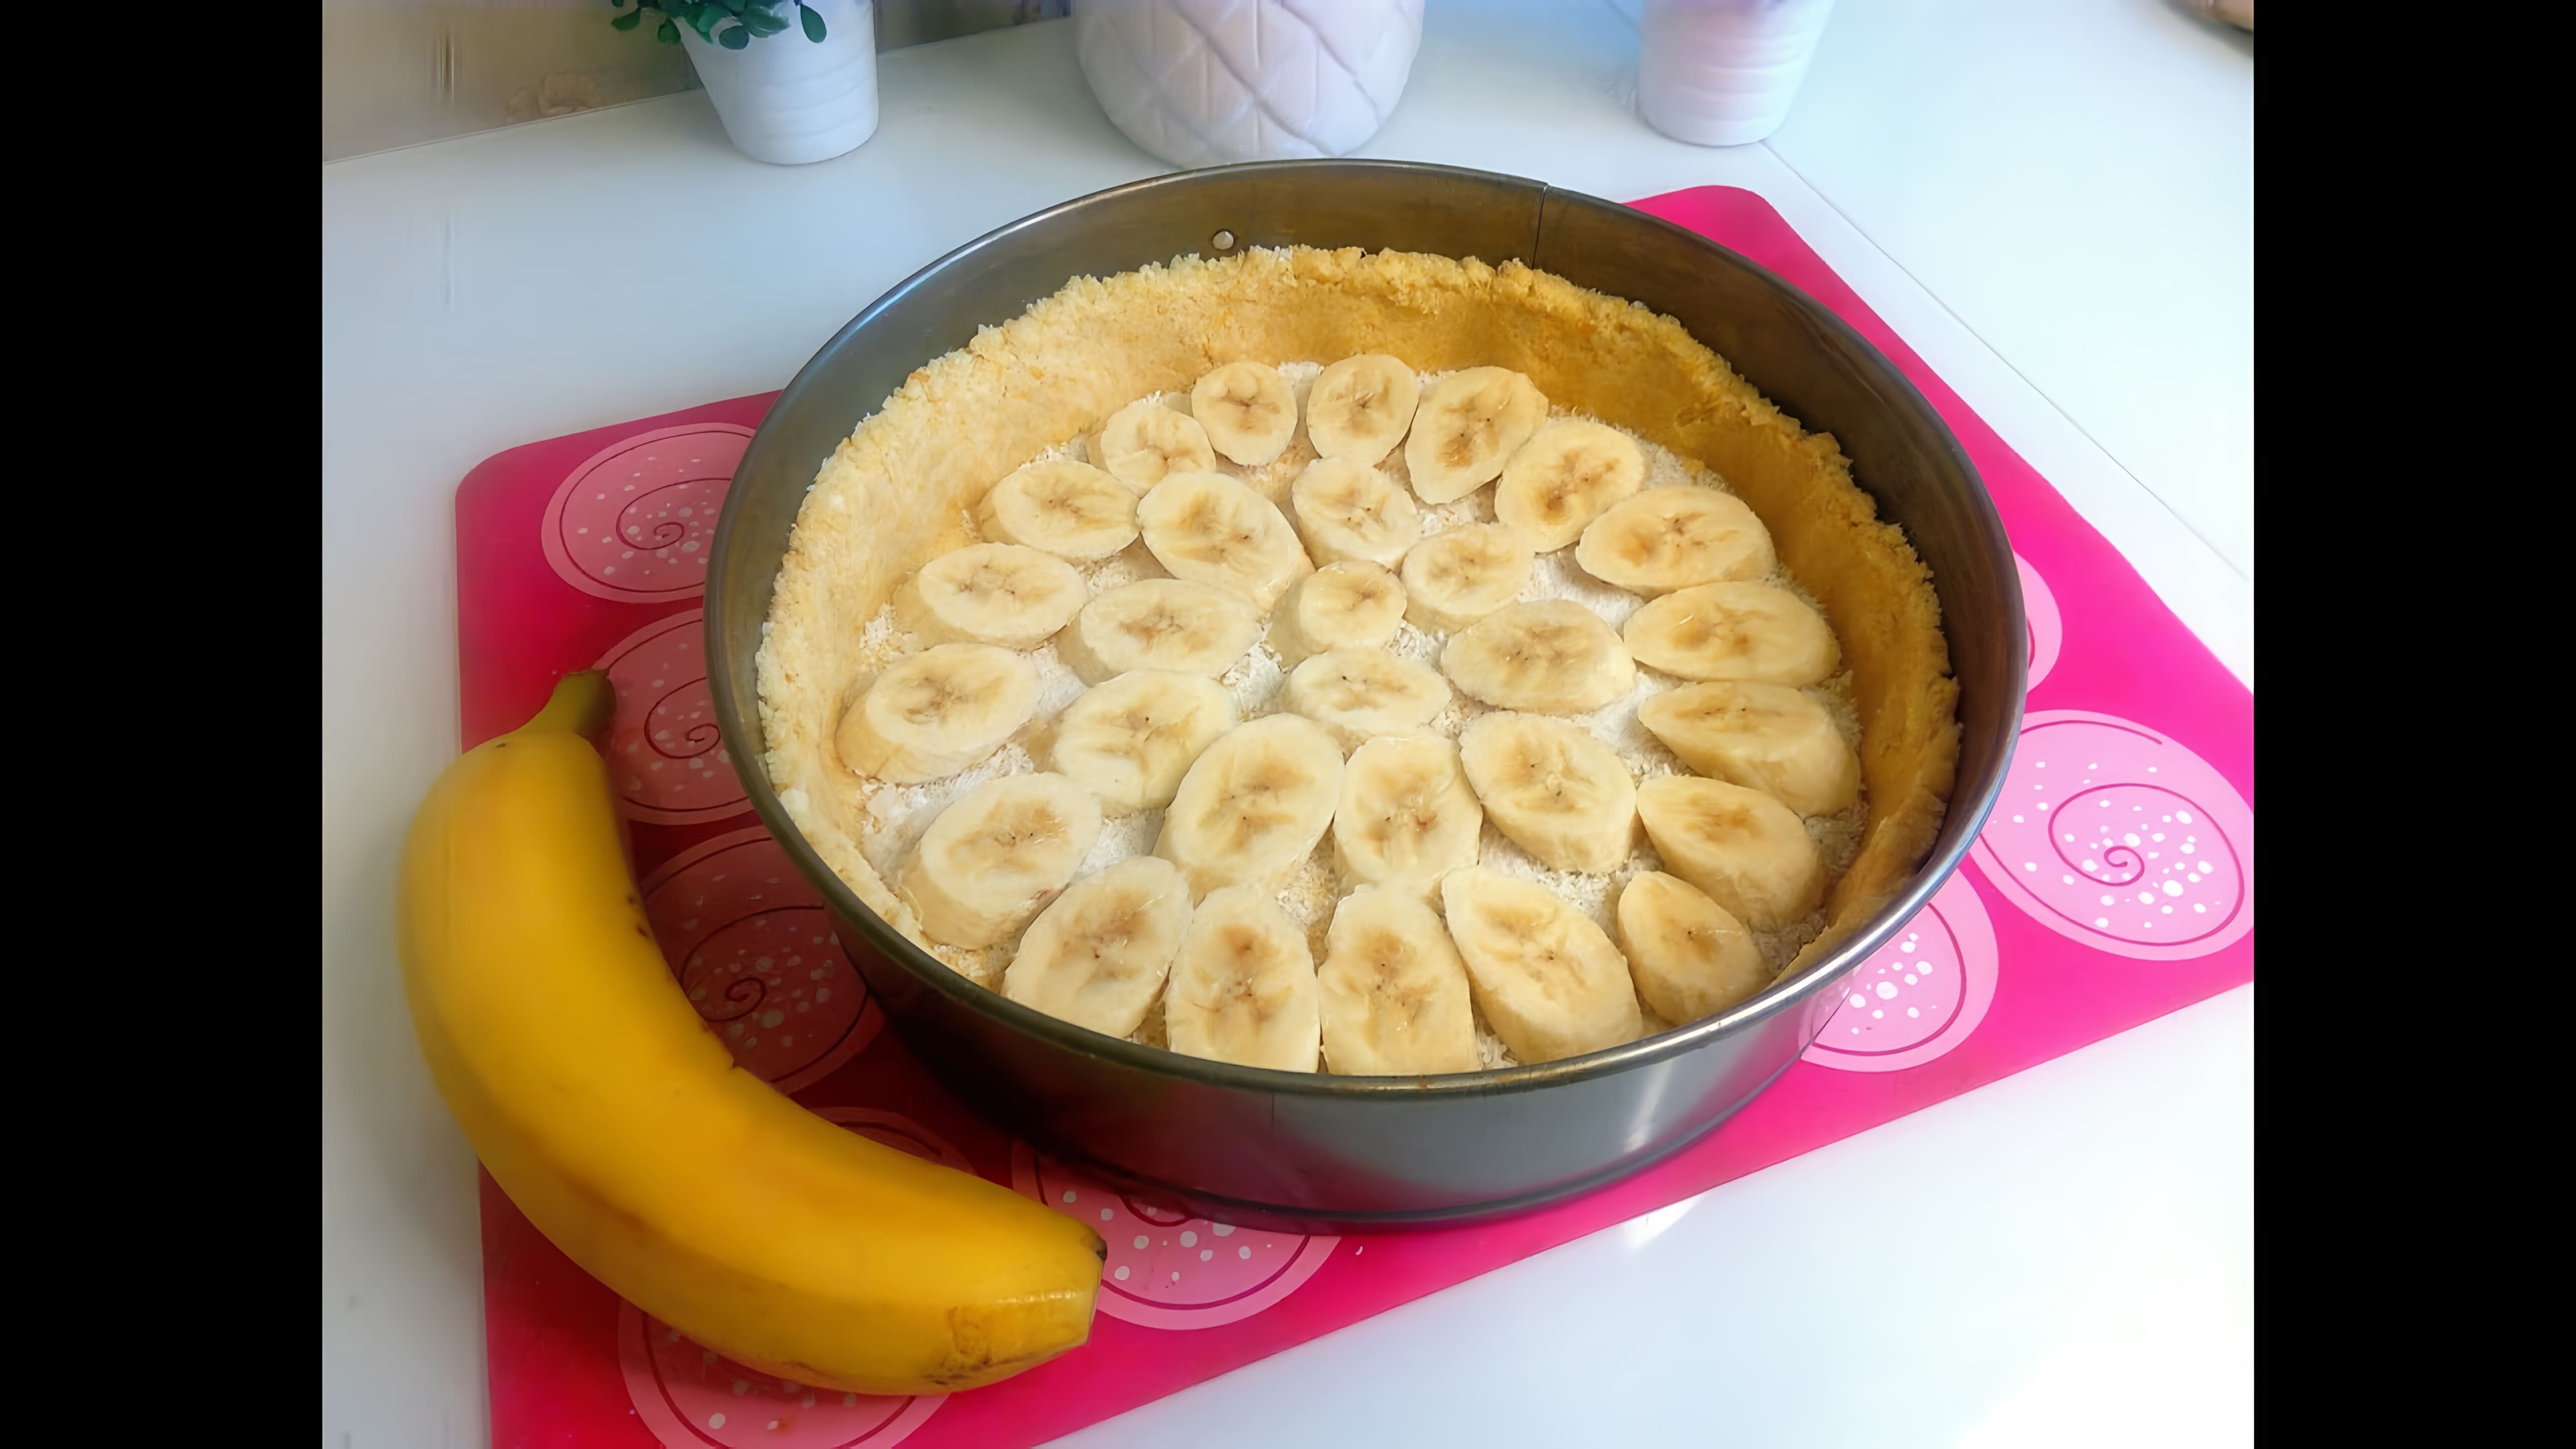 Видео как приготовить банановый чизкейк, который получается мягким, нежным и вкусным